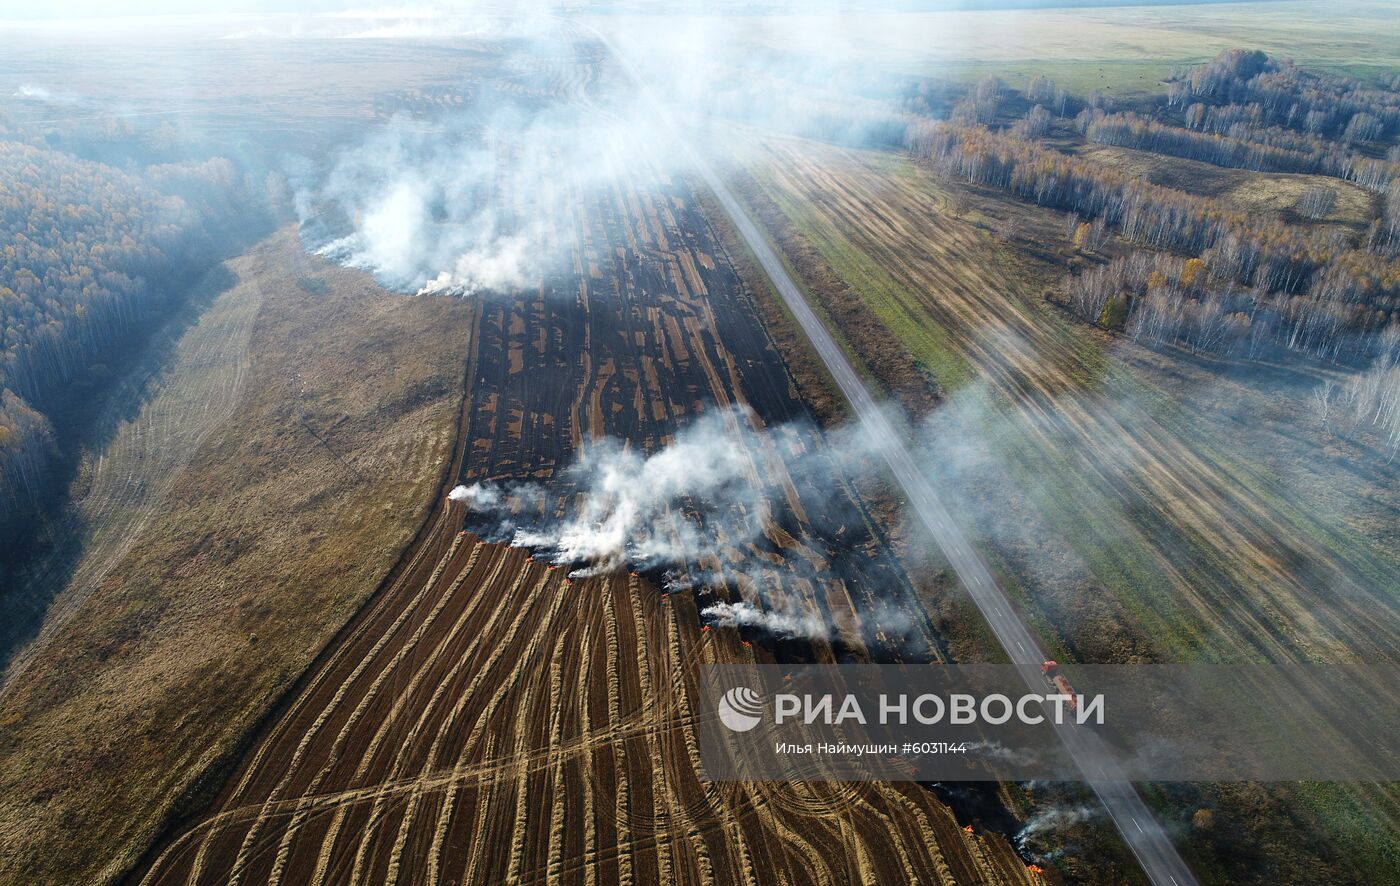 Пал соломы после уборки урожая в Красноярском крае